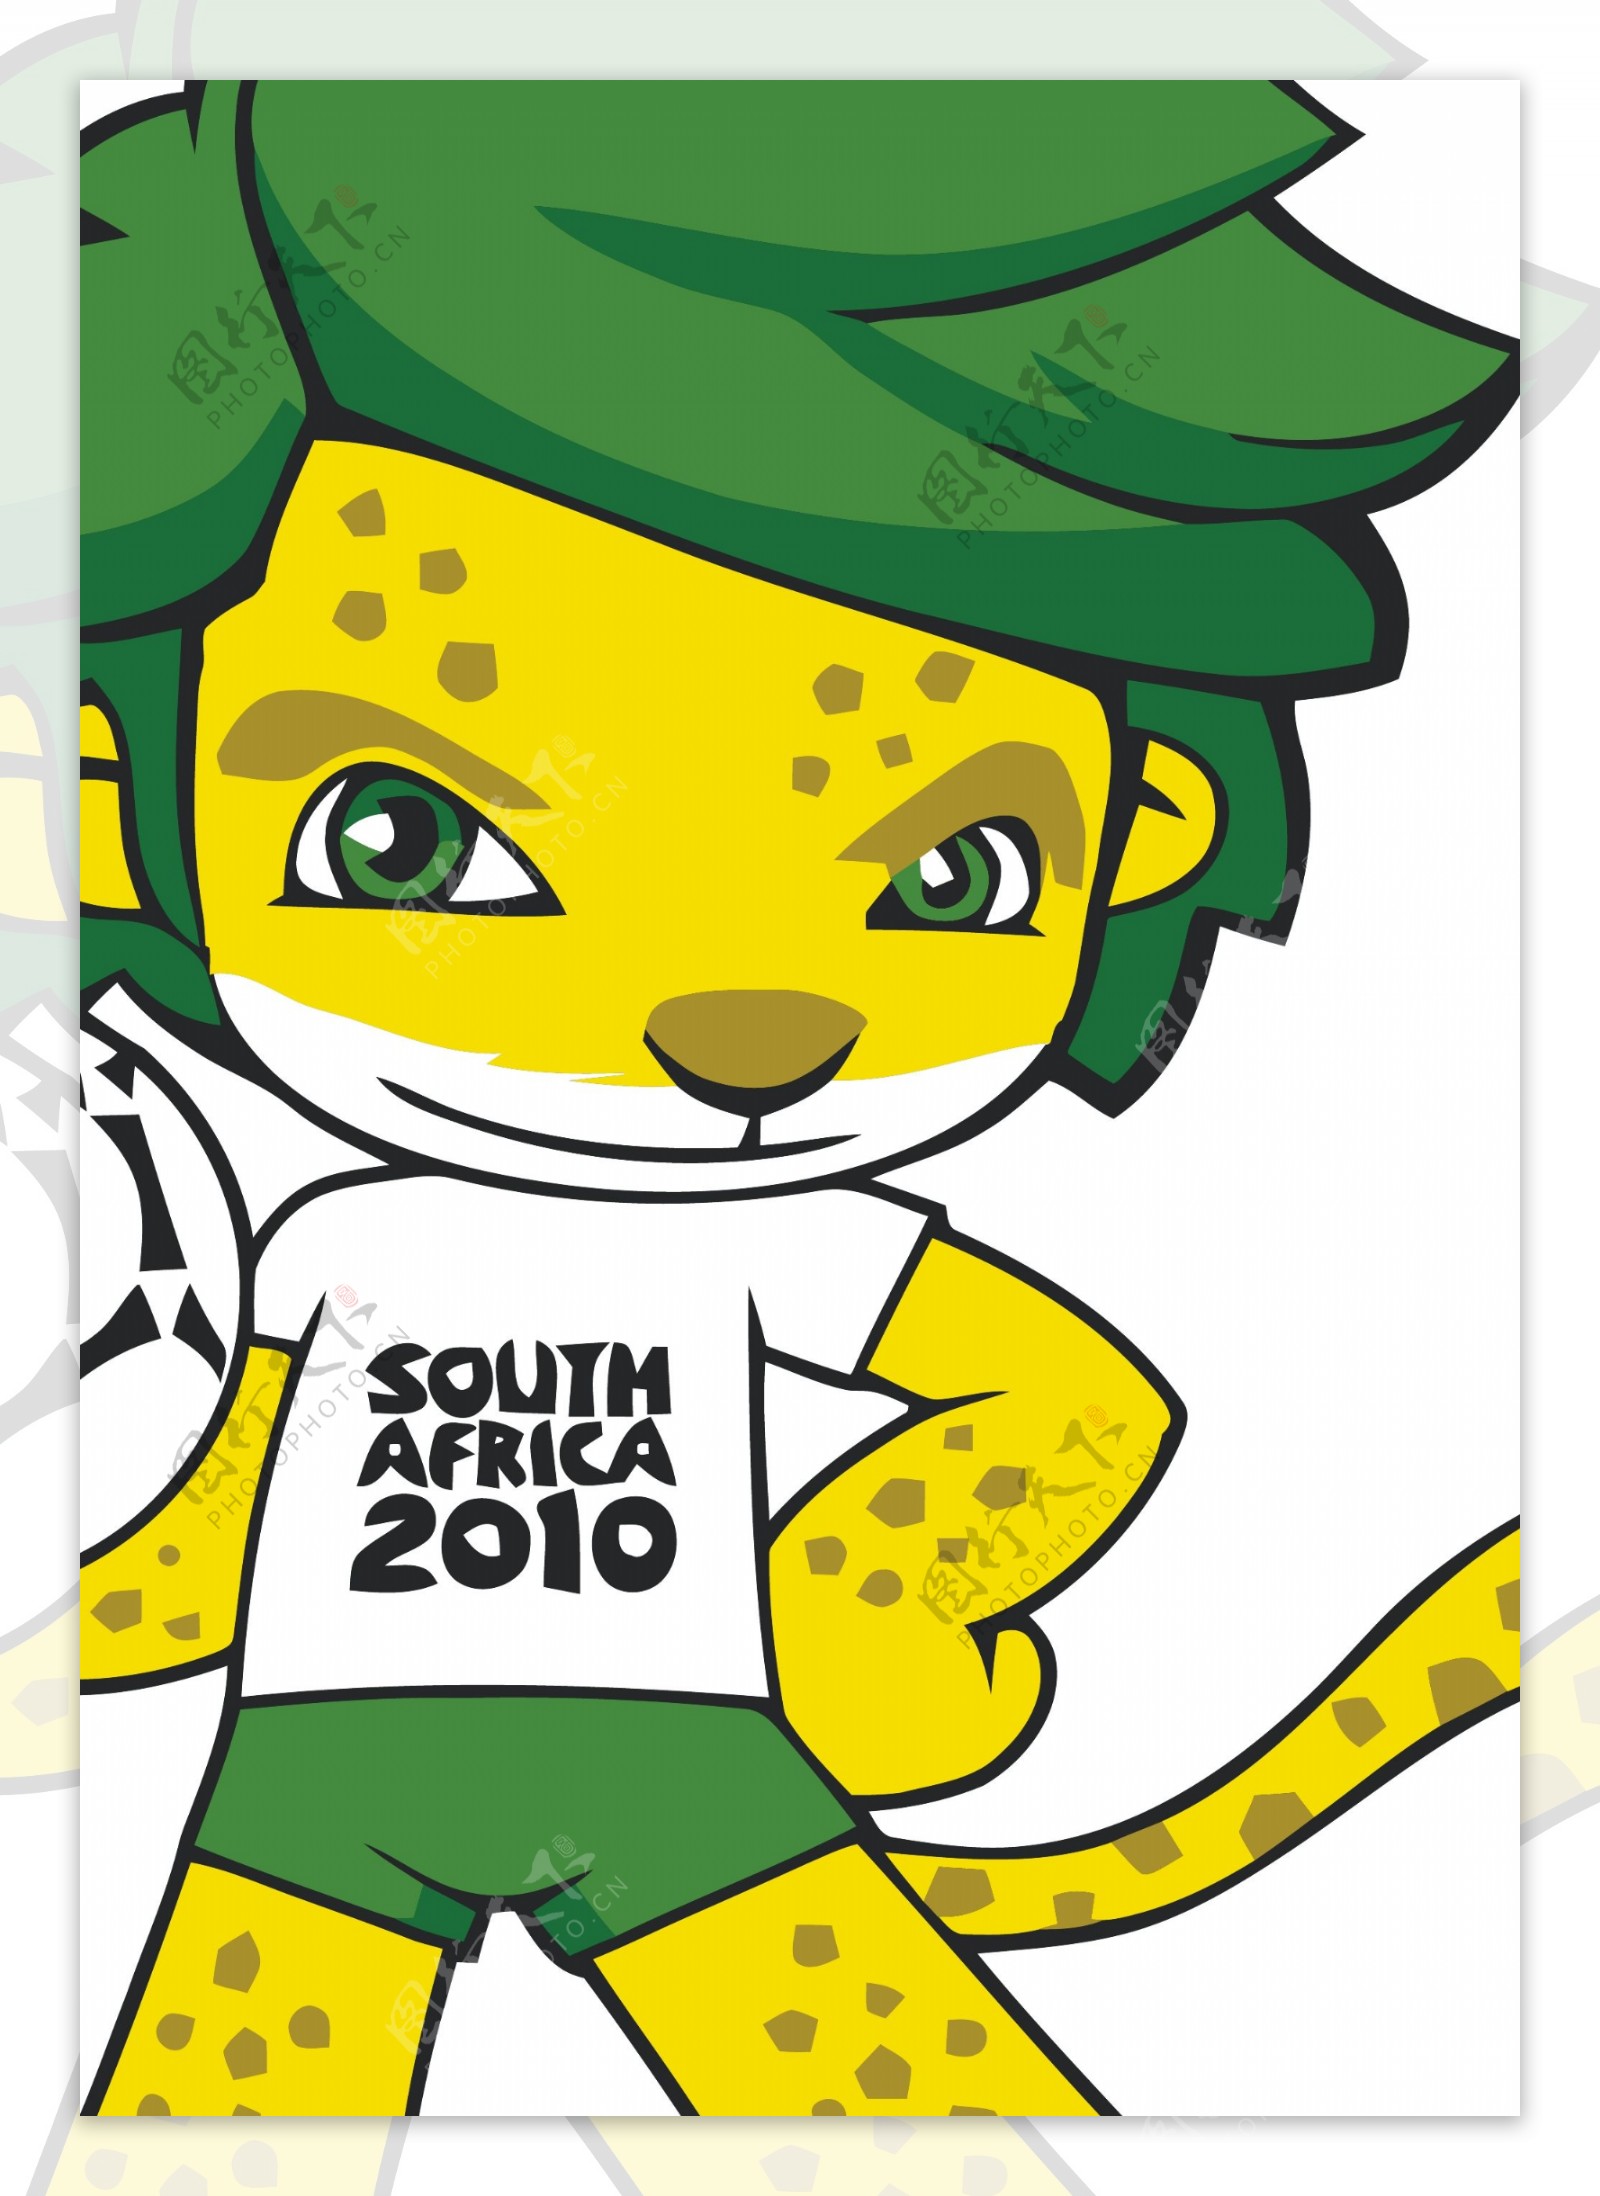 2010南非世界杯吉祥物矢量素材